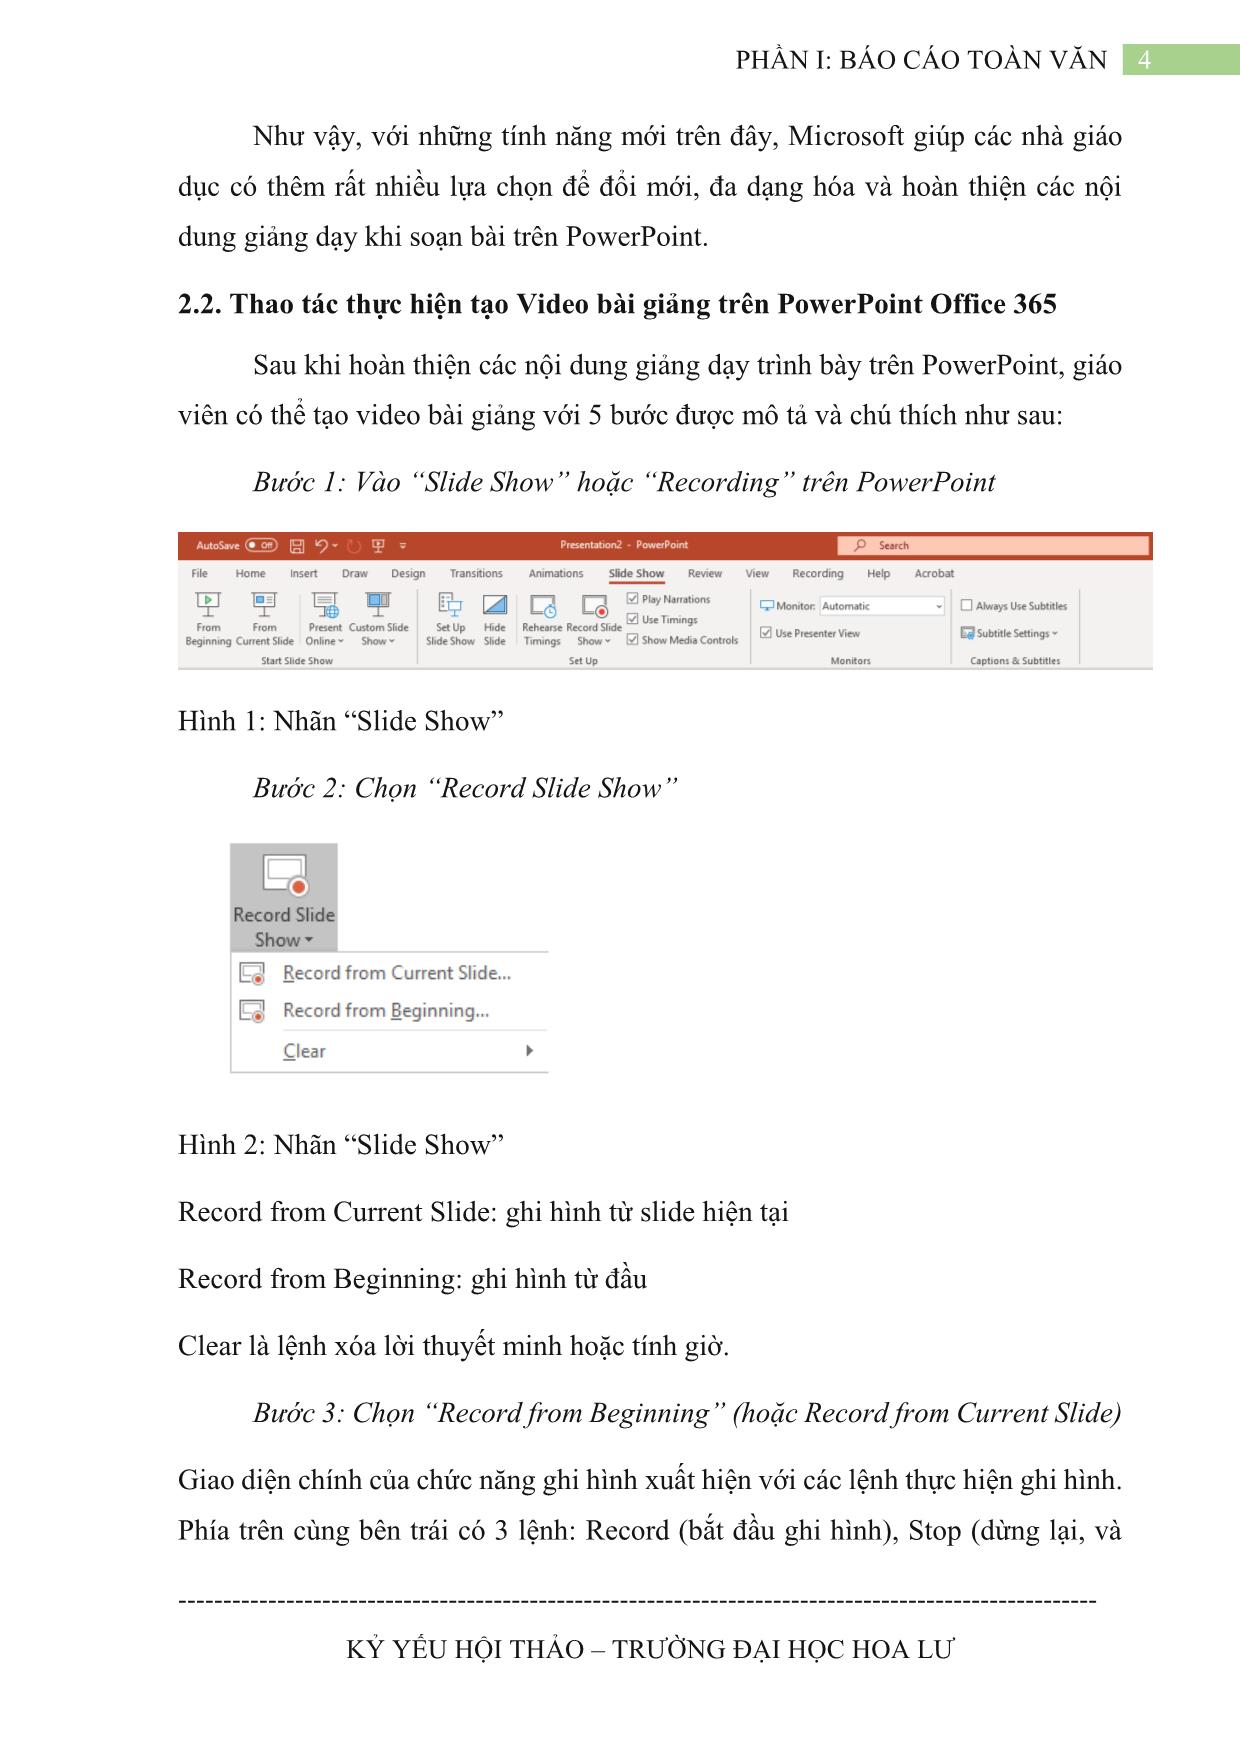 Kỷ yếu hội thảo Tạo video bài giảng với Powerpoint Microsoft Office 365 trang 4